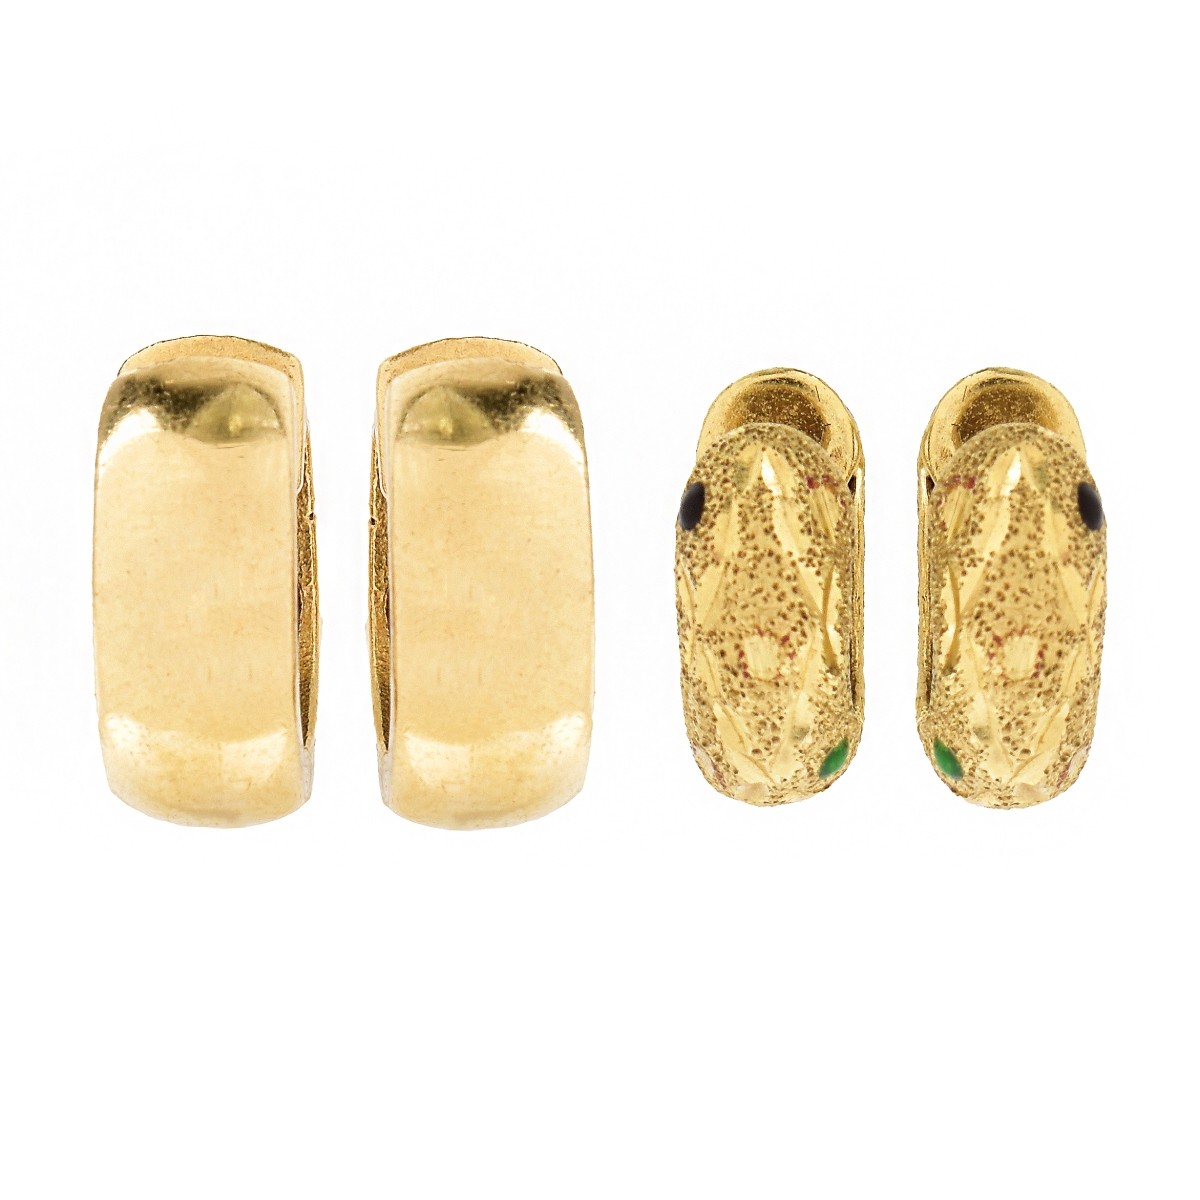 Two (2) Pair of Vintage 14K Gold Huggie Earrings